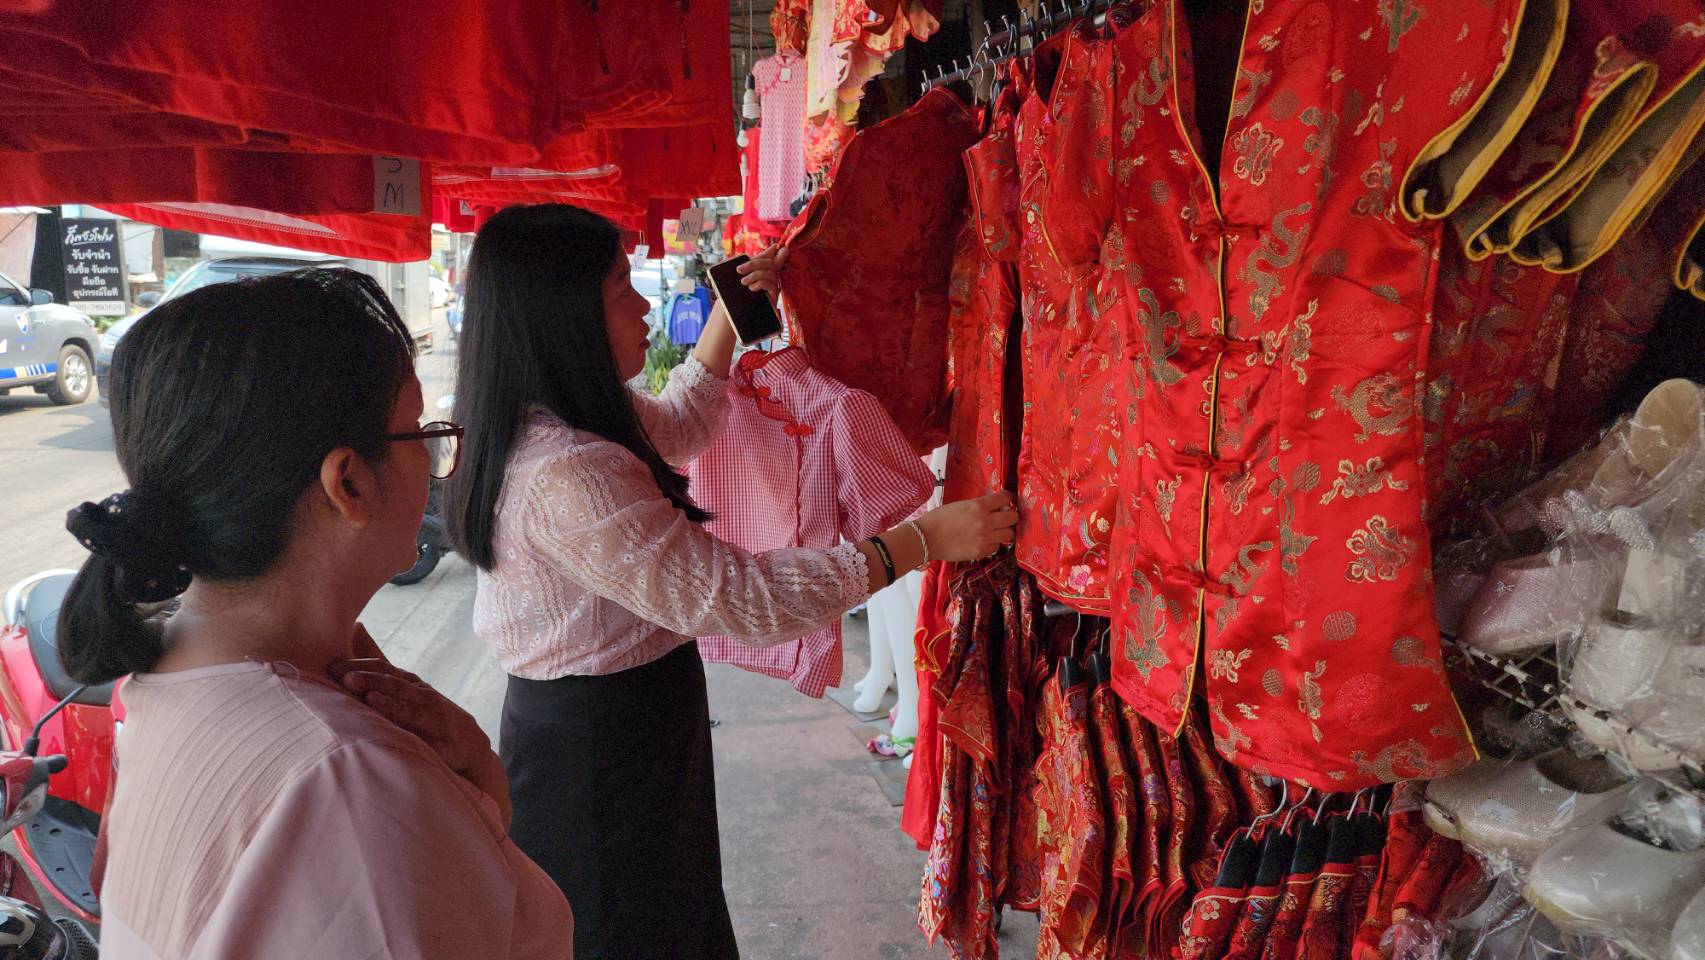 ศรีสะเกษ-รับเทศกาลตรุษจีนร้านขายเสื้อผ้าแห่ตกแต่งร้านด้วยเสื้อสีแดง ย้ำไม่มีการฉวยโอกาสขึ้นราคาเสื้อในช่วงเทศกาล